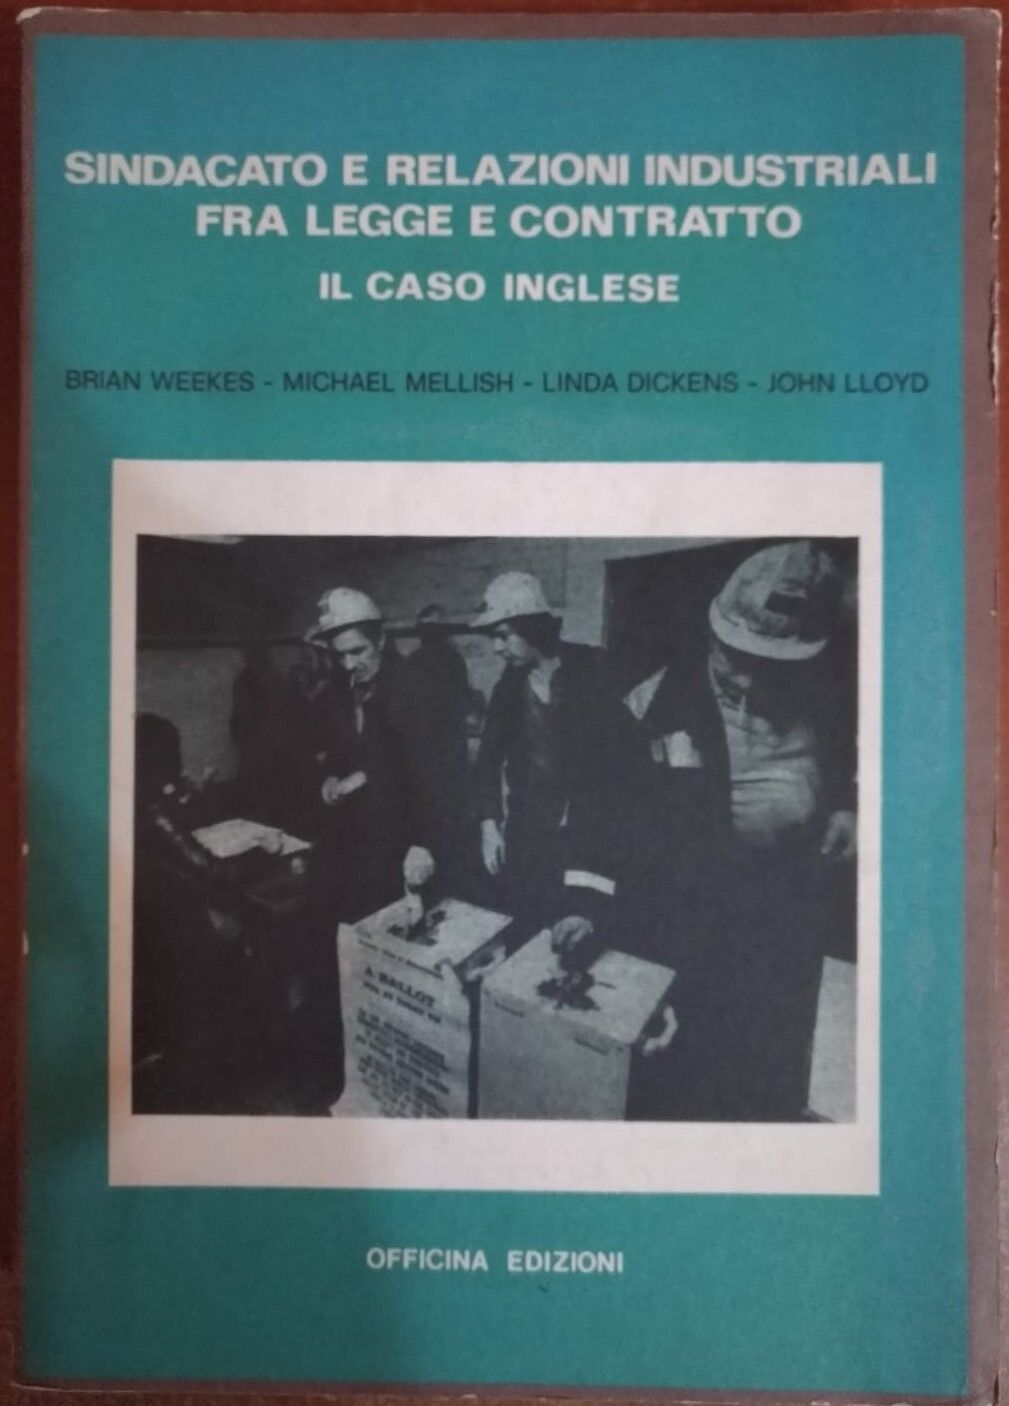 Sindacato e relazioni industriali fra legge e contratto,1978,Officina edizioni-S